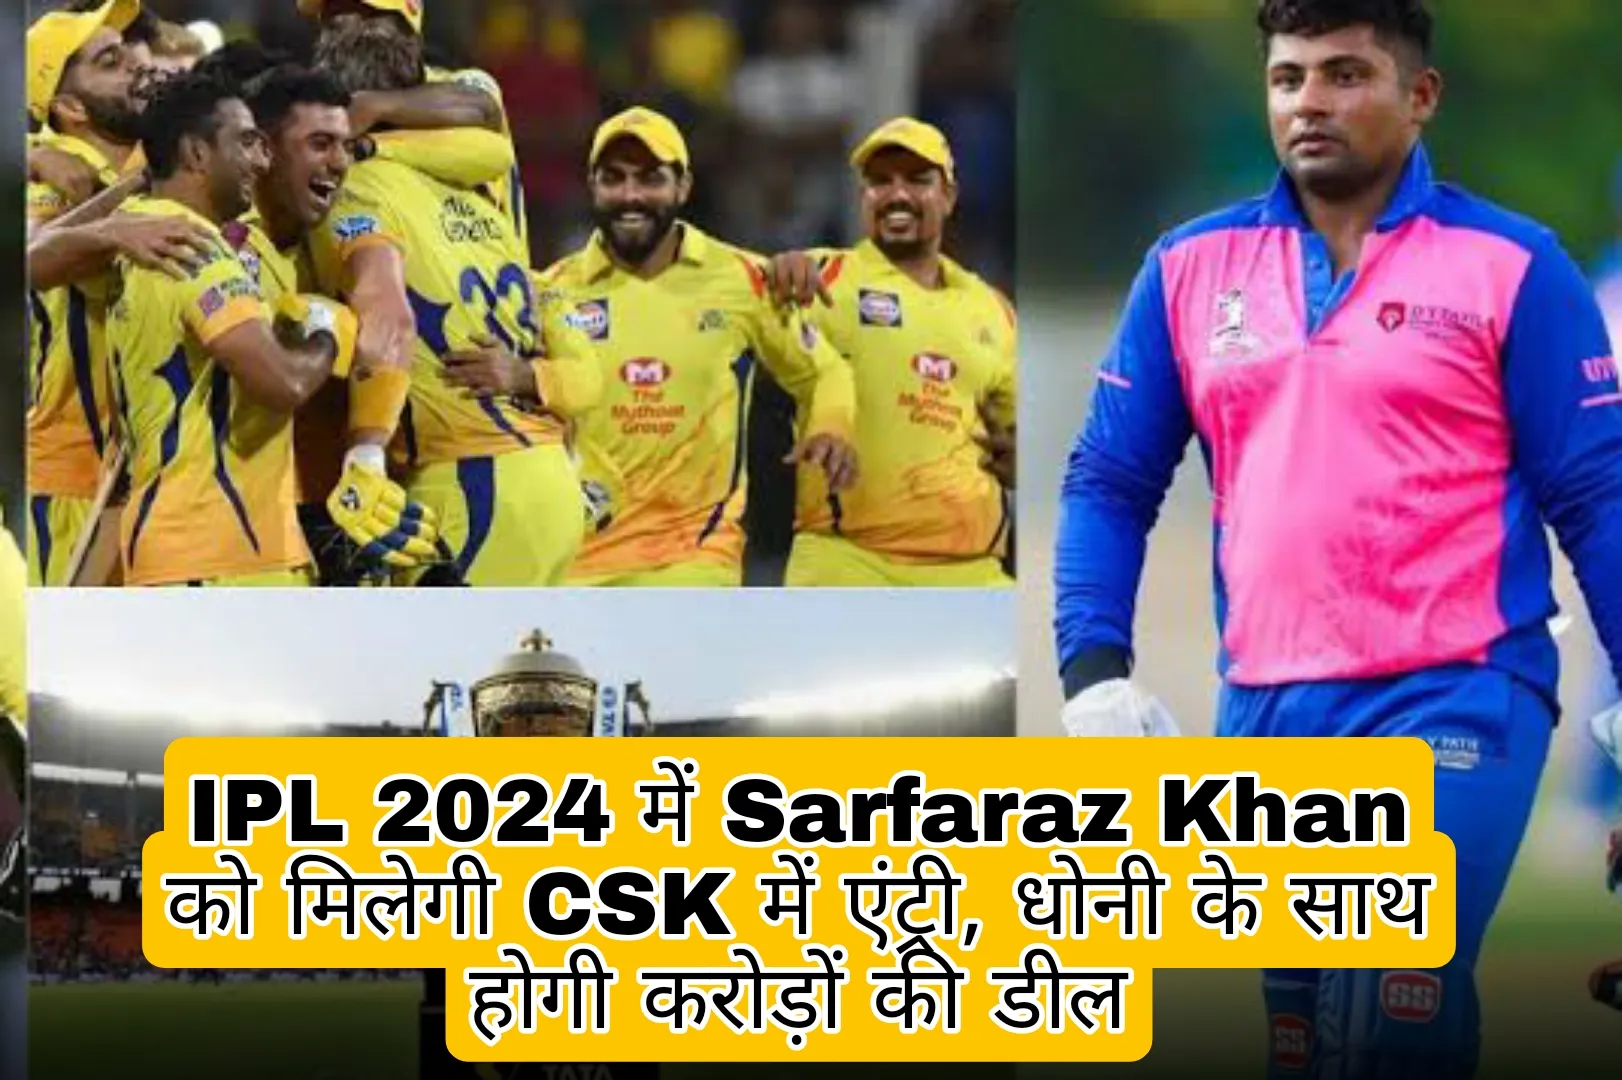 Sarfaraz Khan Will Play for CSK